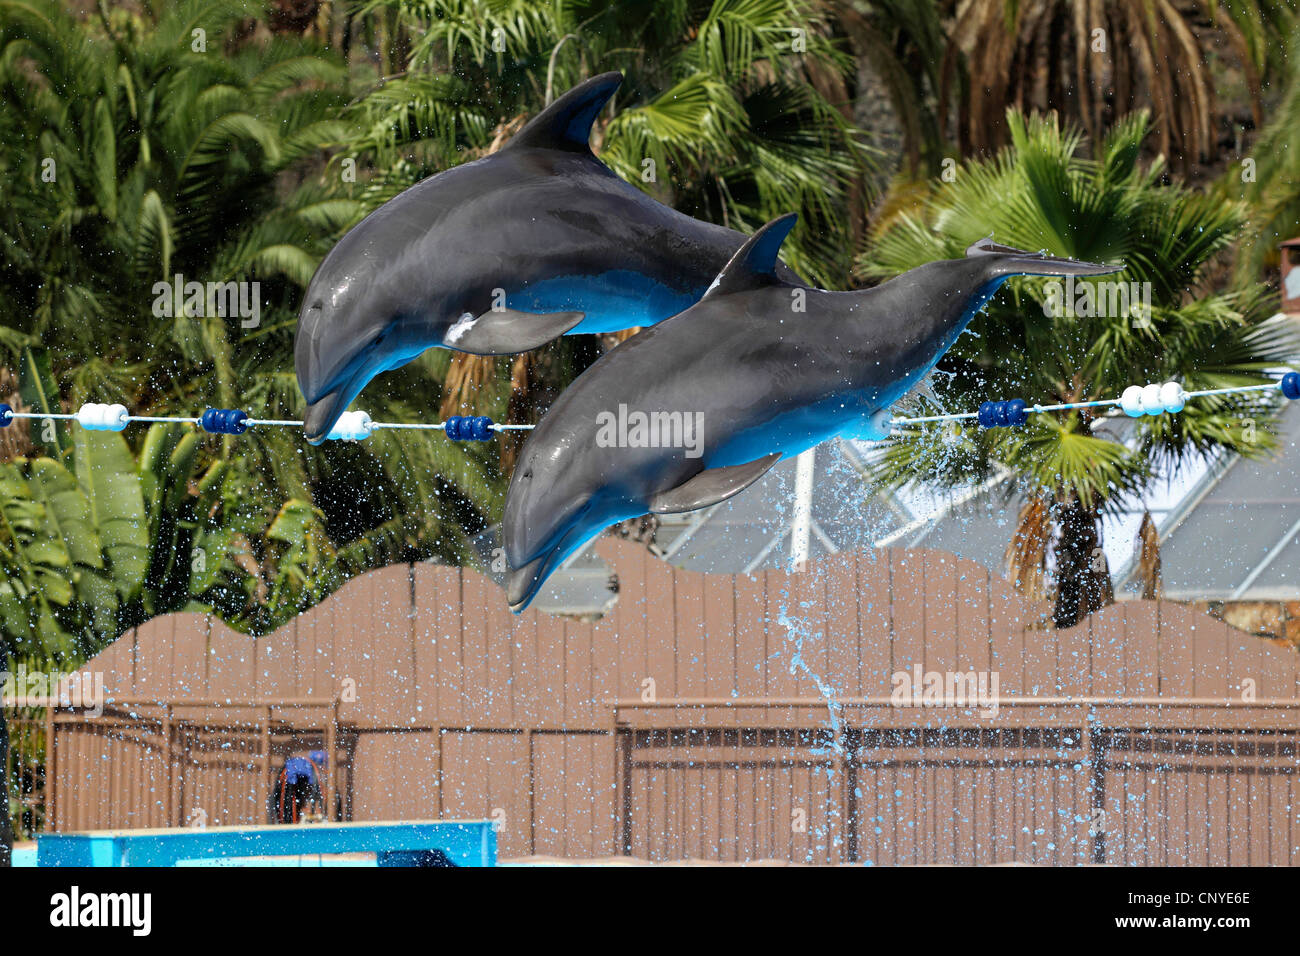 Flasche-Nase Delphin, bottlenosed Delphin, gemeiner Flasche – Nosed Delfin (Tursiops Truncatus), zwei Tiere, die synchron springen über einen Balken während einer Show in einem Delfinarium Stockfoto